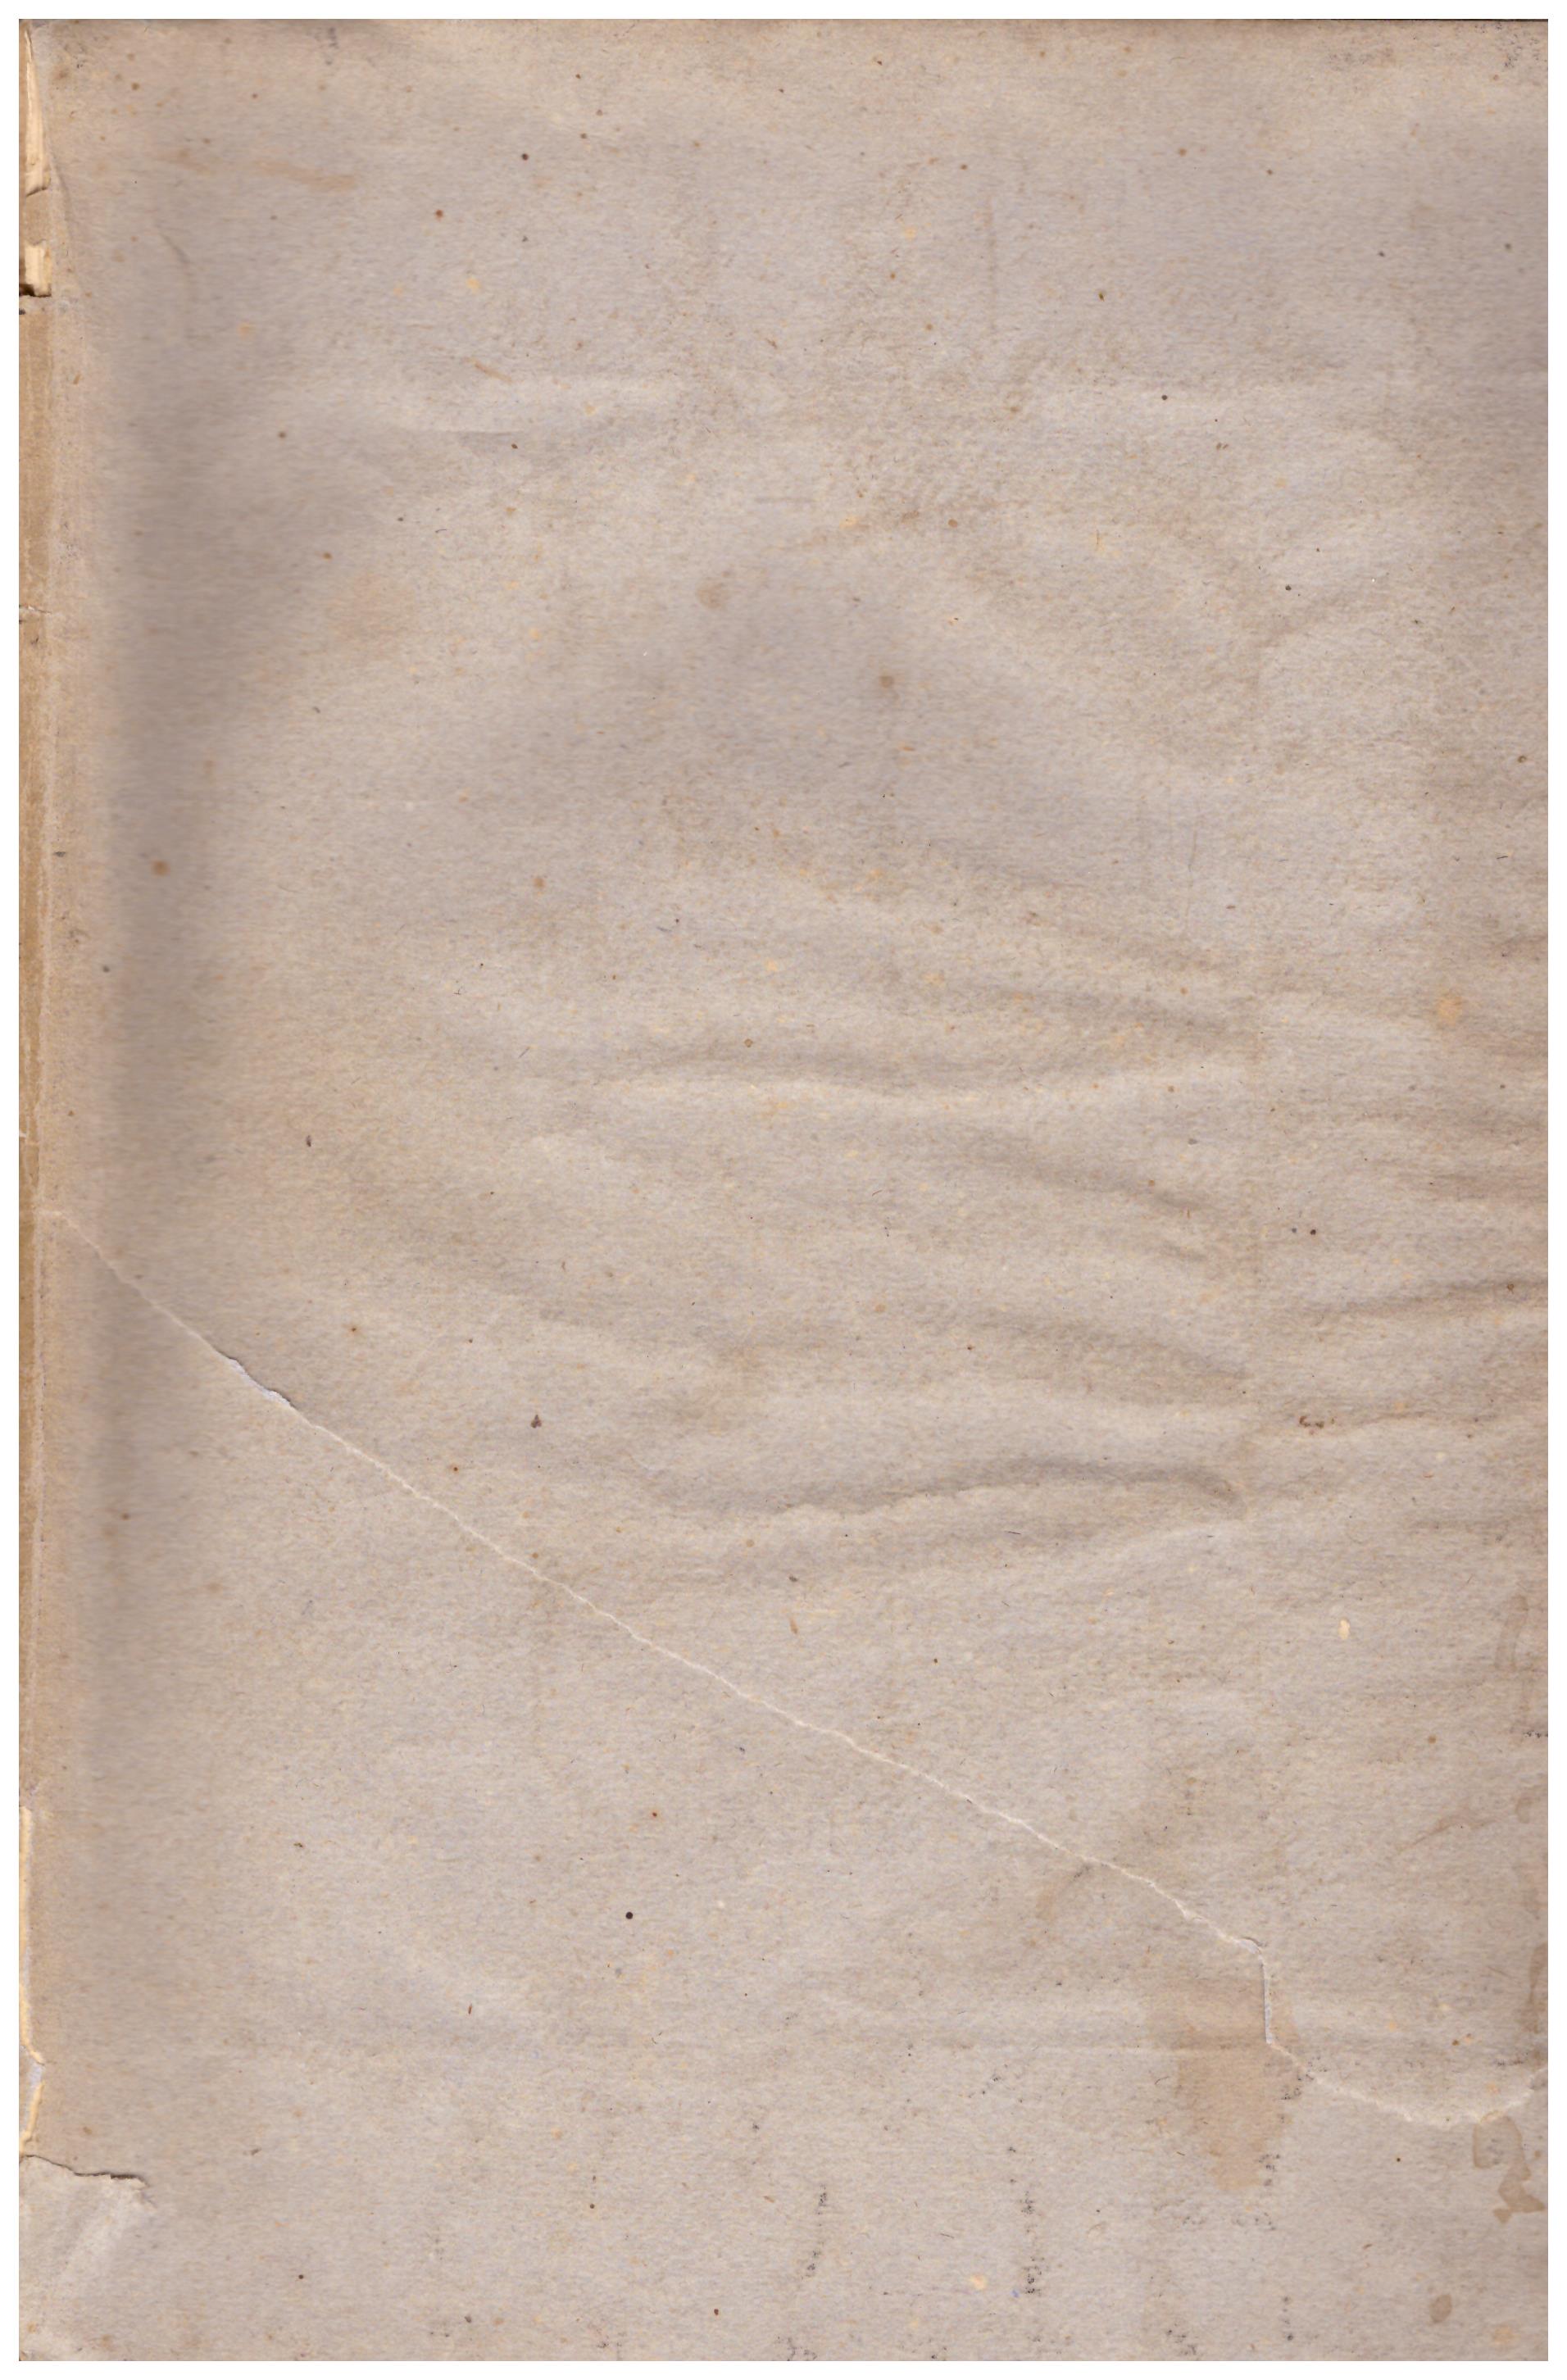 Titolo: Manuale di storia ecclesiastica Autore: Enrico Bruck Editore: sant'Alessandro, Bergamo 1904